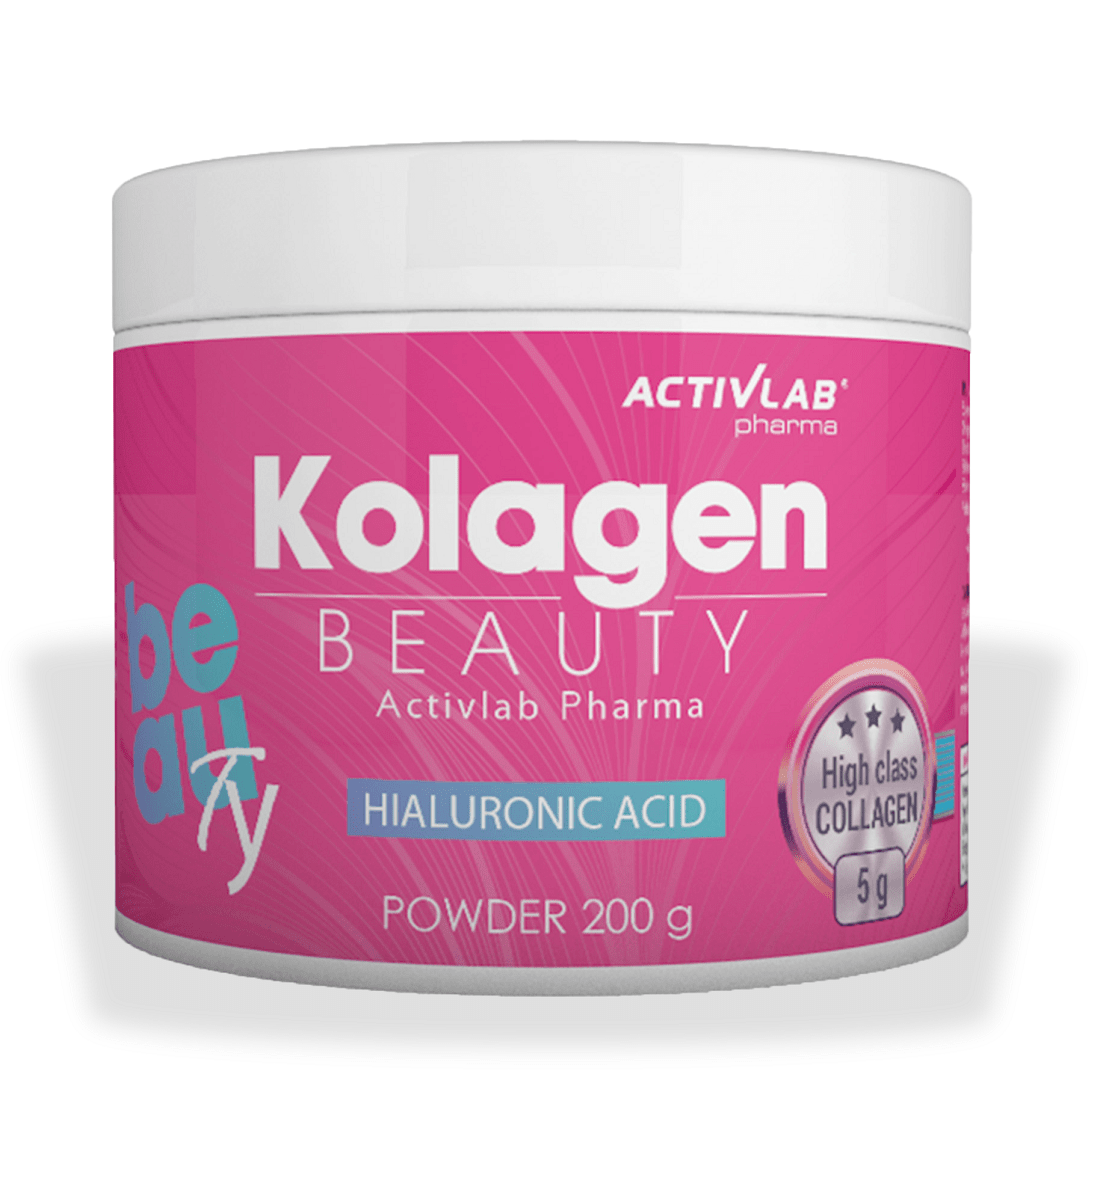 Для суставов и связок Activlab Kolagen Beauty, 200 грамм,  мл, ActivLab. Хондропротекторы. Поддержание здоровья Укрепление суставов и связок 